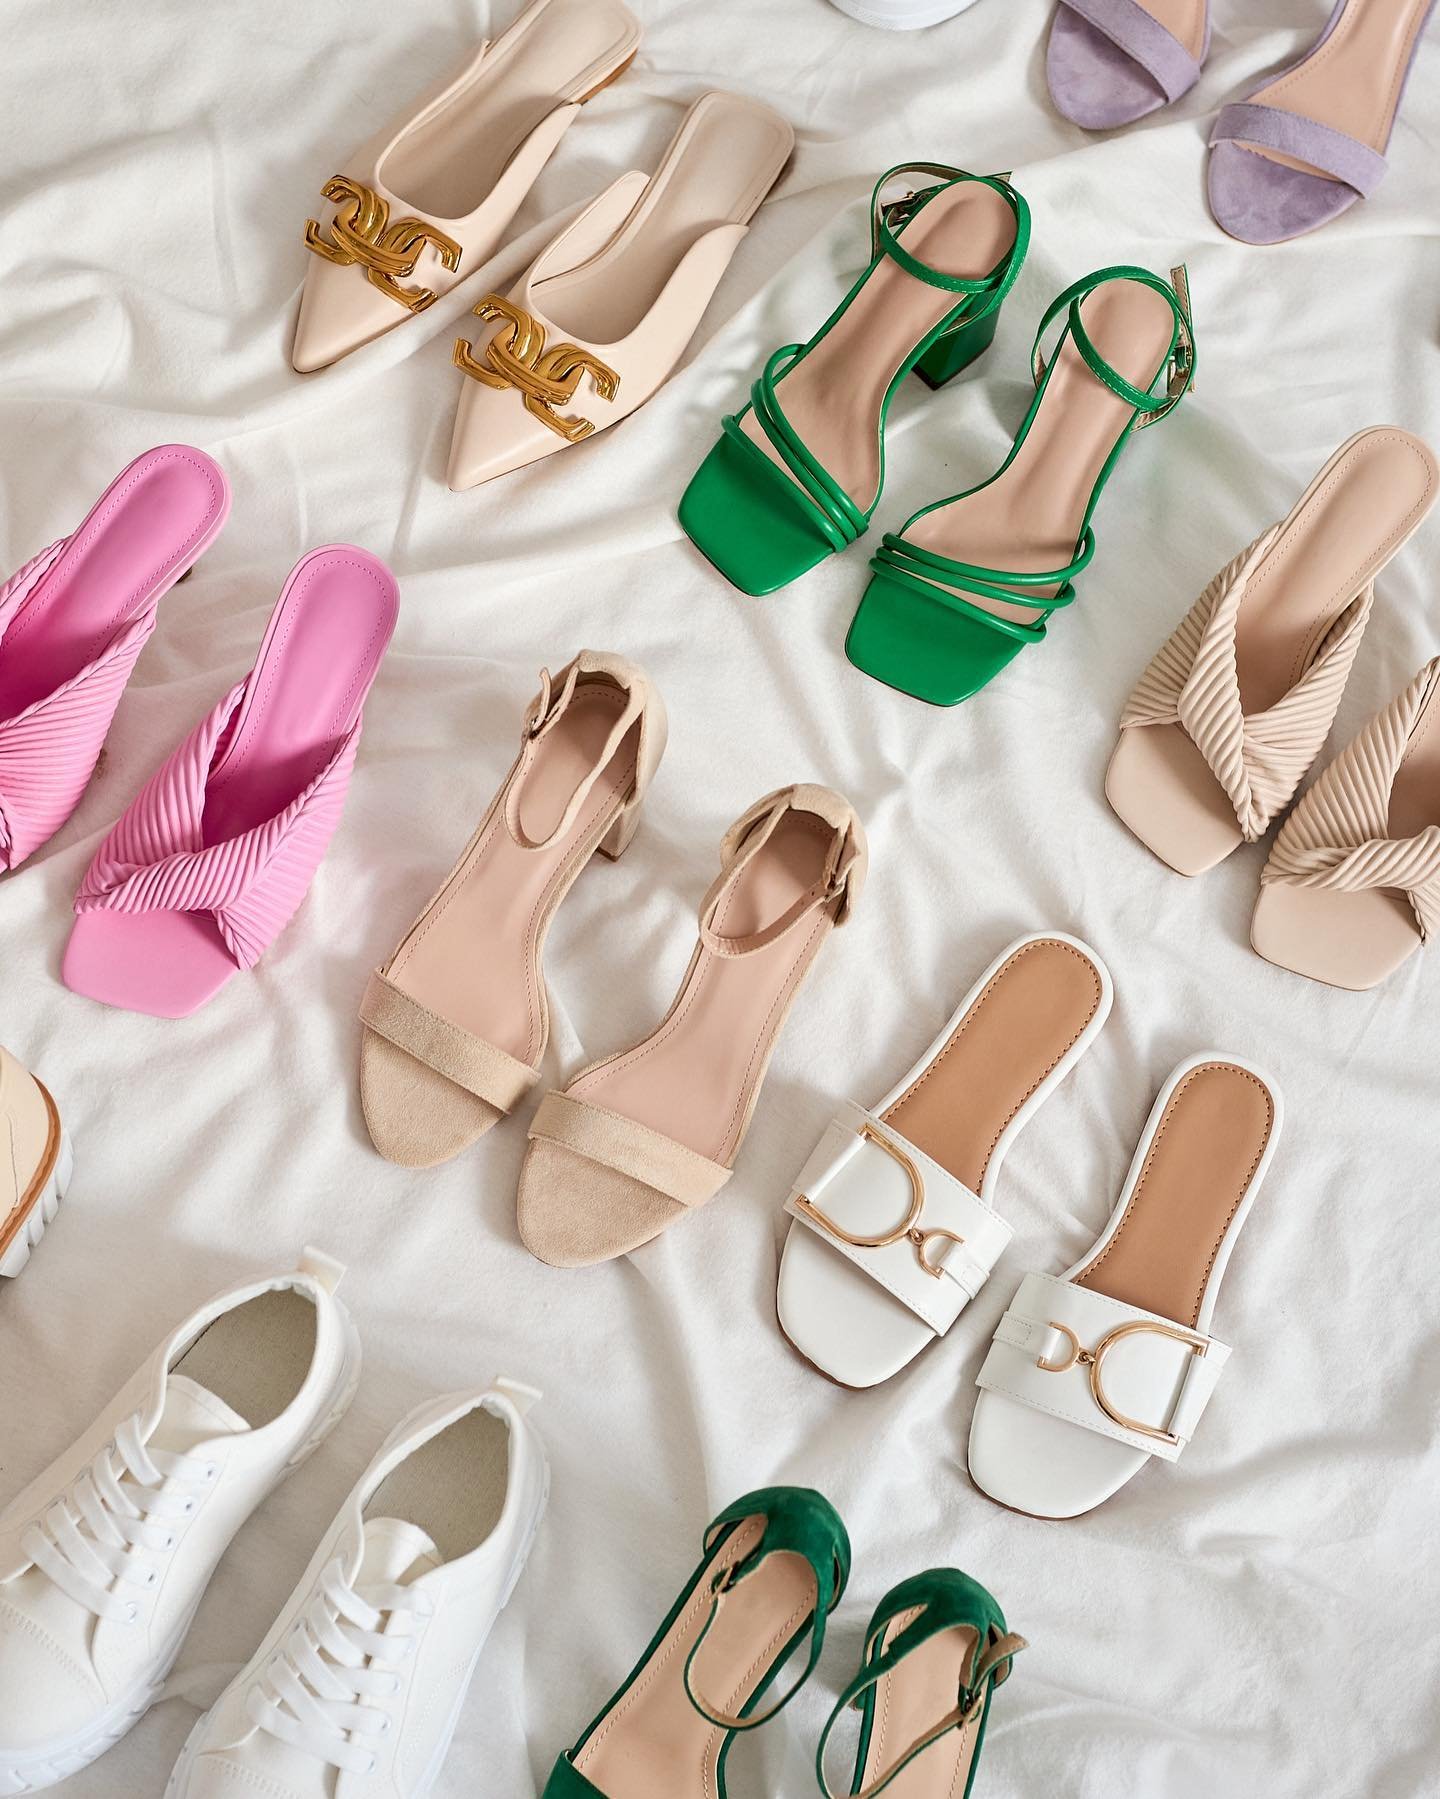 Videla si už náš výber topánok? 👠 NIE? Tak to musíš hneď napraviť 😍 sandále, šľapky a štýlové tenisky vhodné do všetkých outfitov 💃🏼 vyberieš si farebné alebo radšej klasiku?